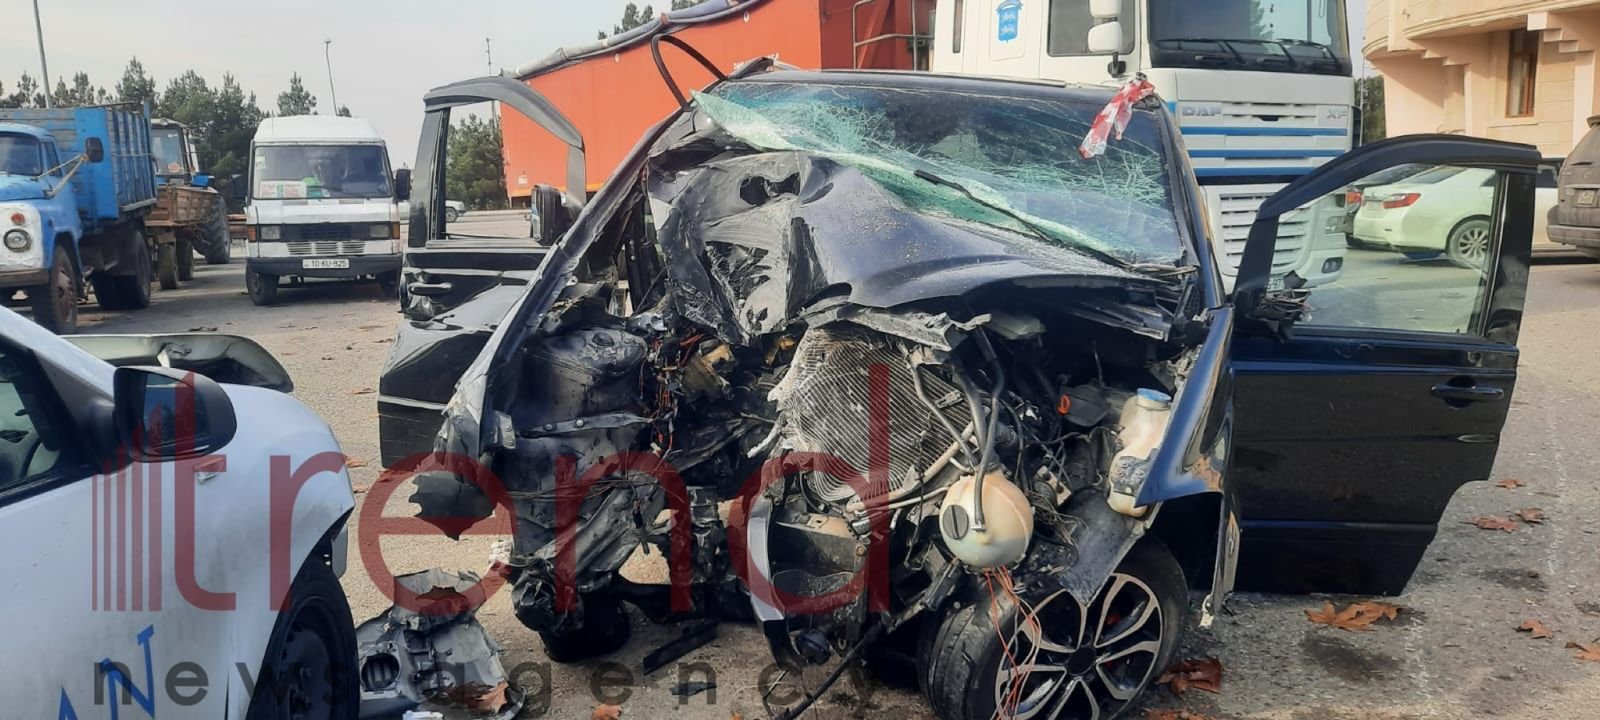 Распространились кадры с автомобилем, попавшим в тяжелое ДТП в Агдаме